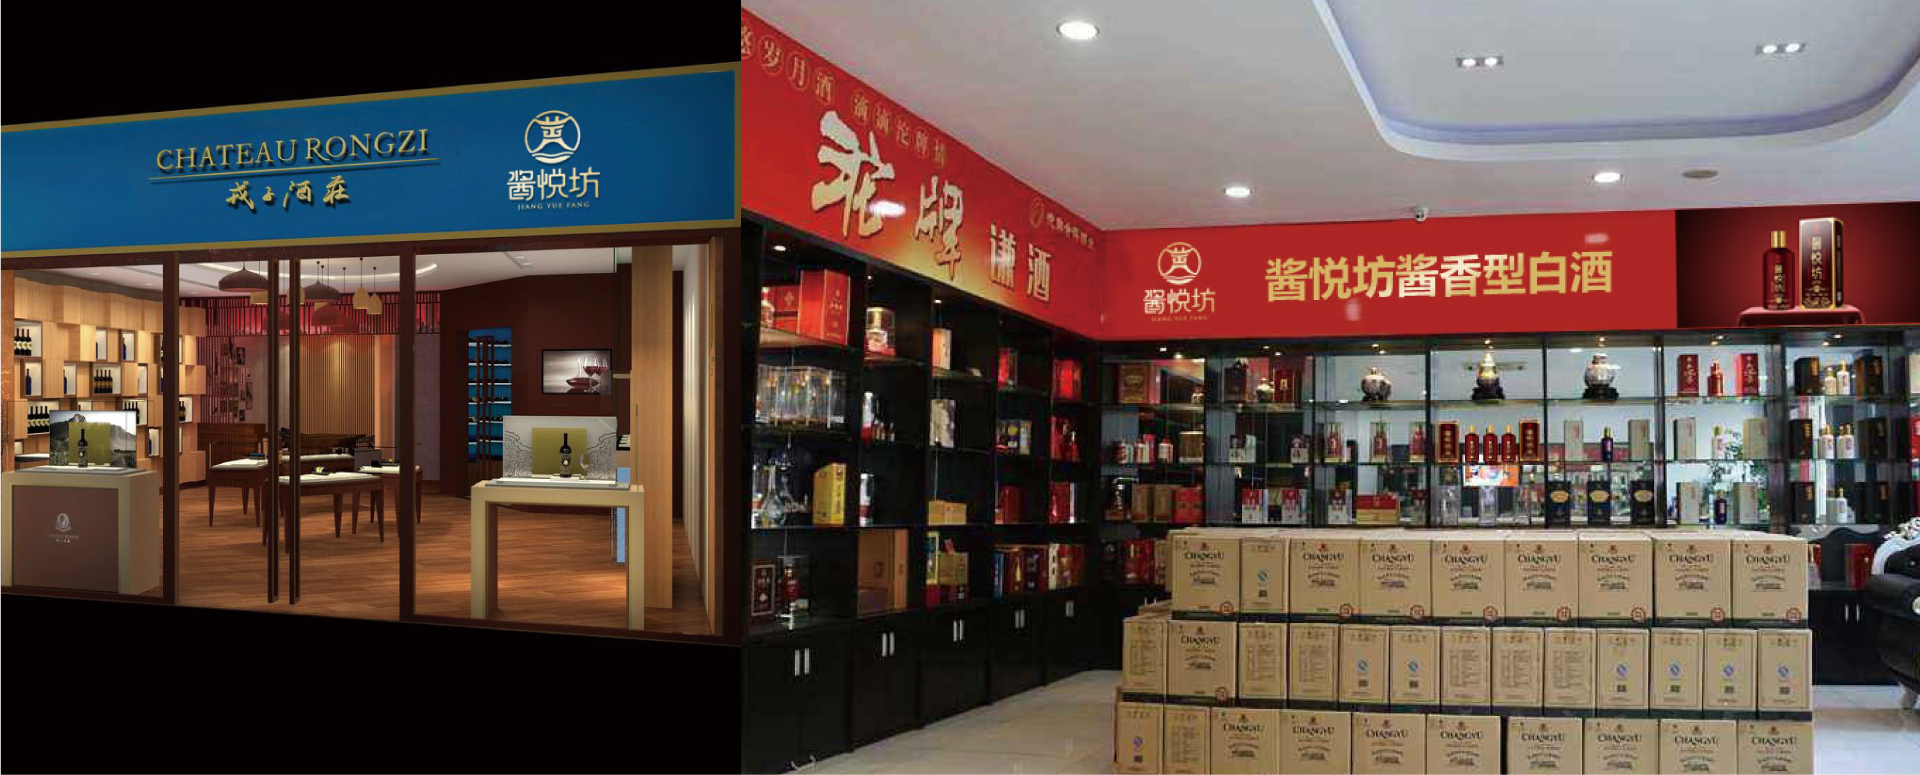 惠州酱悦坊酒商标定制品牌全案策划案例分享